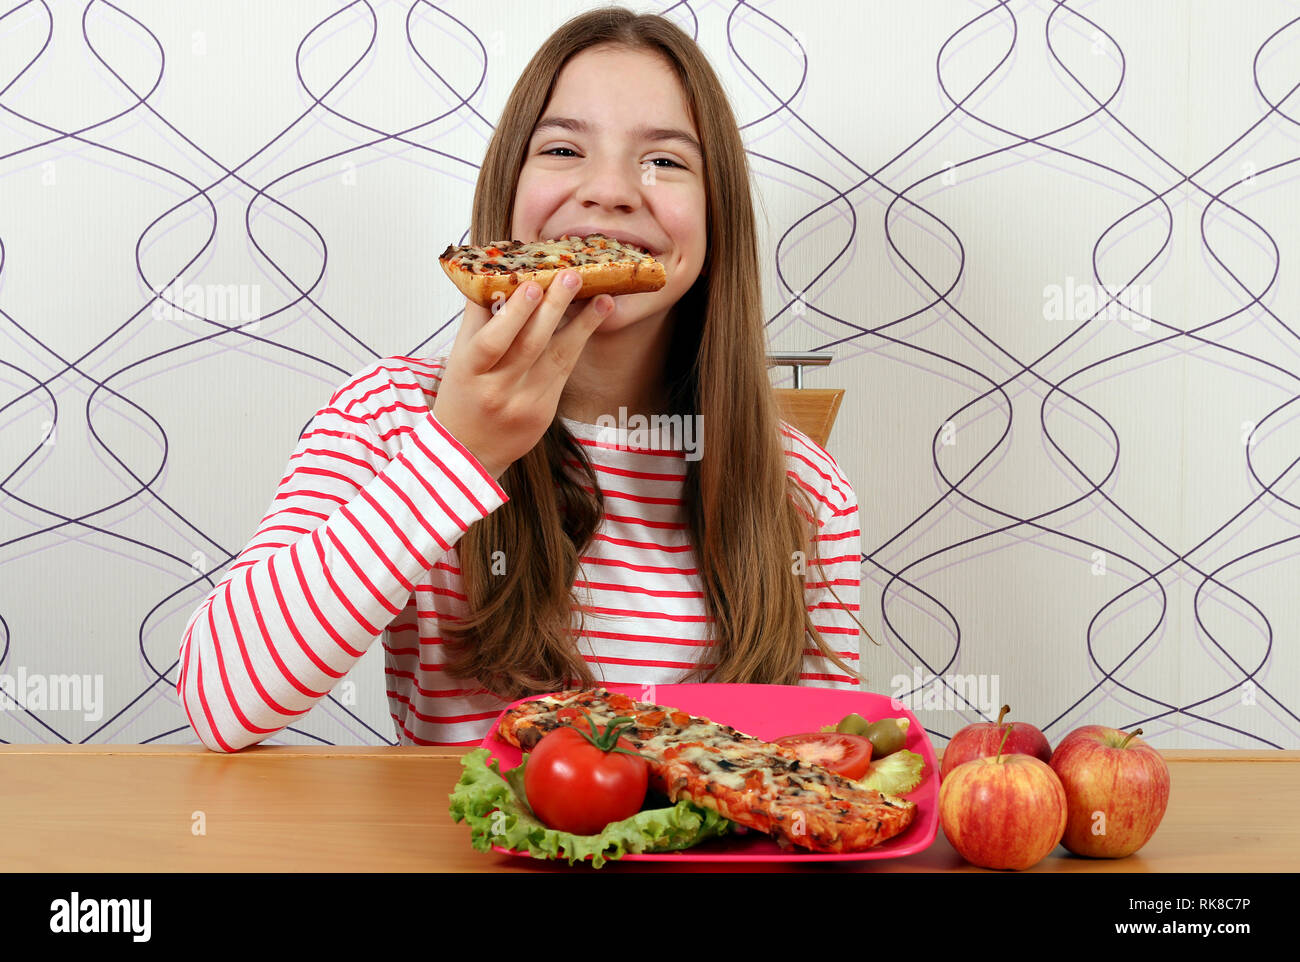 Hungrig schönes junges Mädchen isst Sandwich Stockfoto